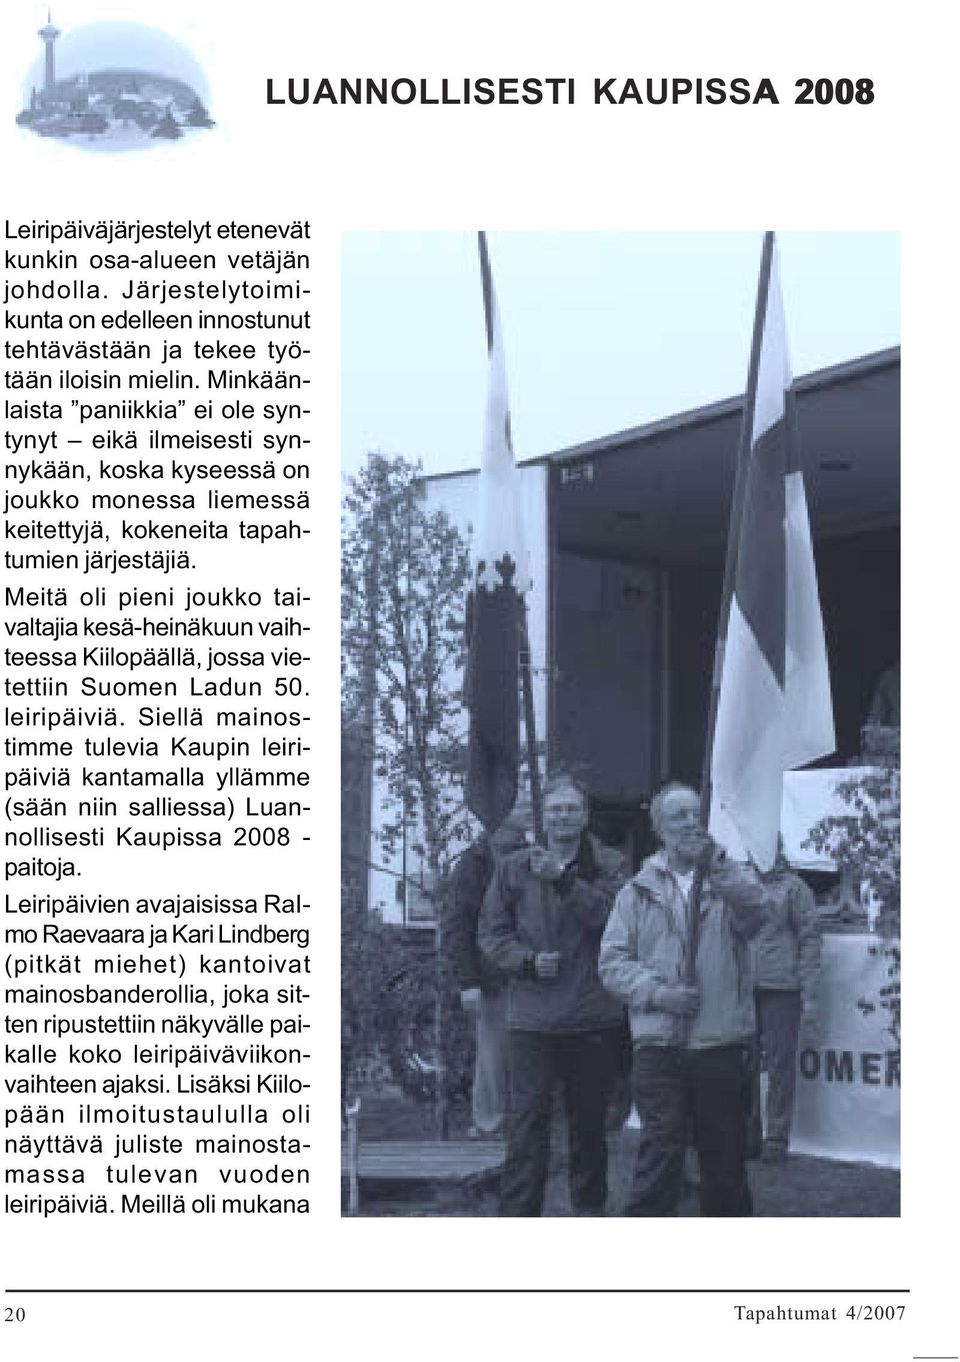 Meitä oli pieni joukko taivaltajia kesä-heinäkuun vaihteessa Kiilopäällä, jossa vietettiin Suomen Ladun 50. leiripäiviä.